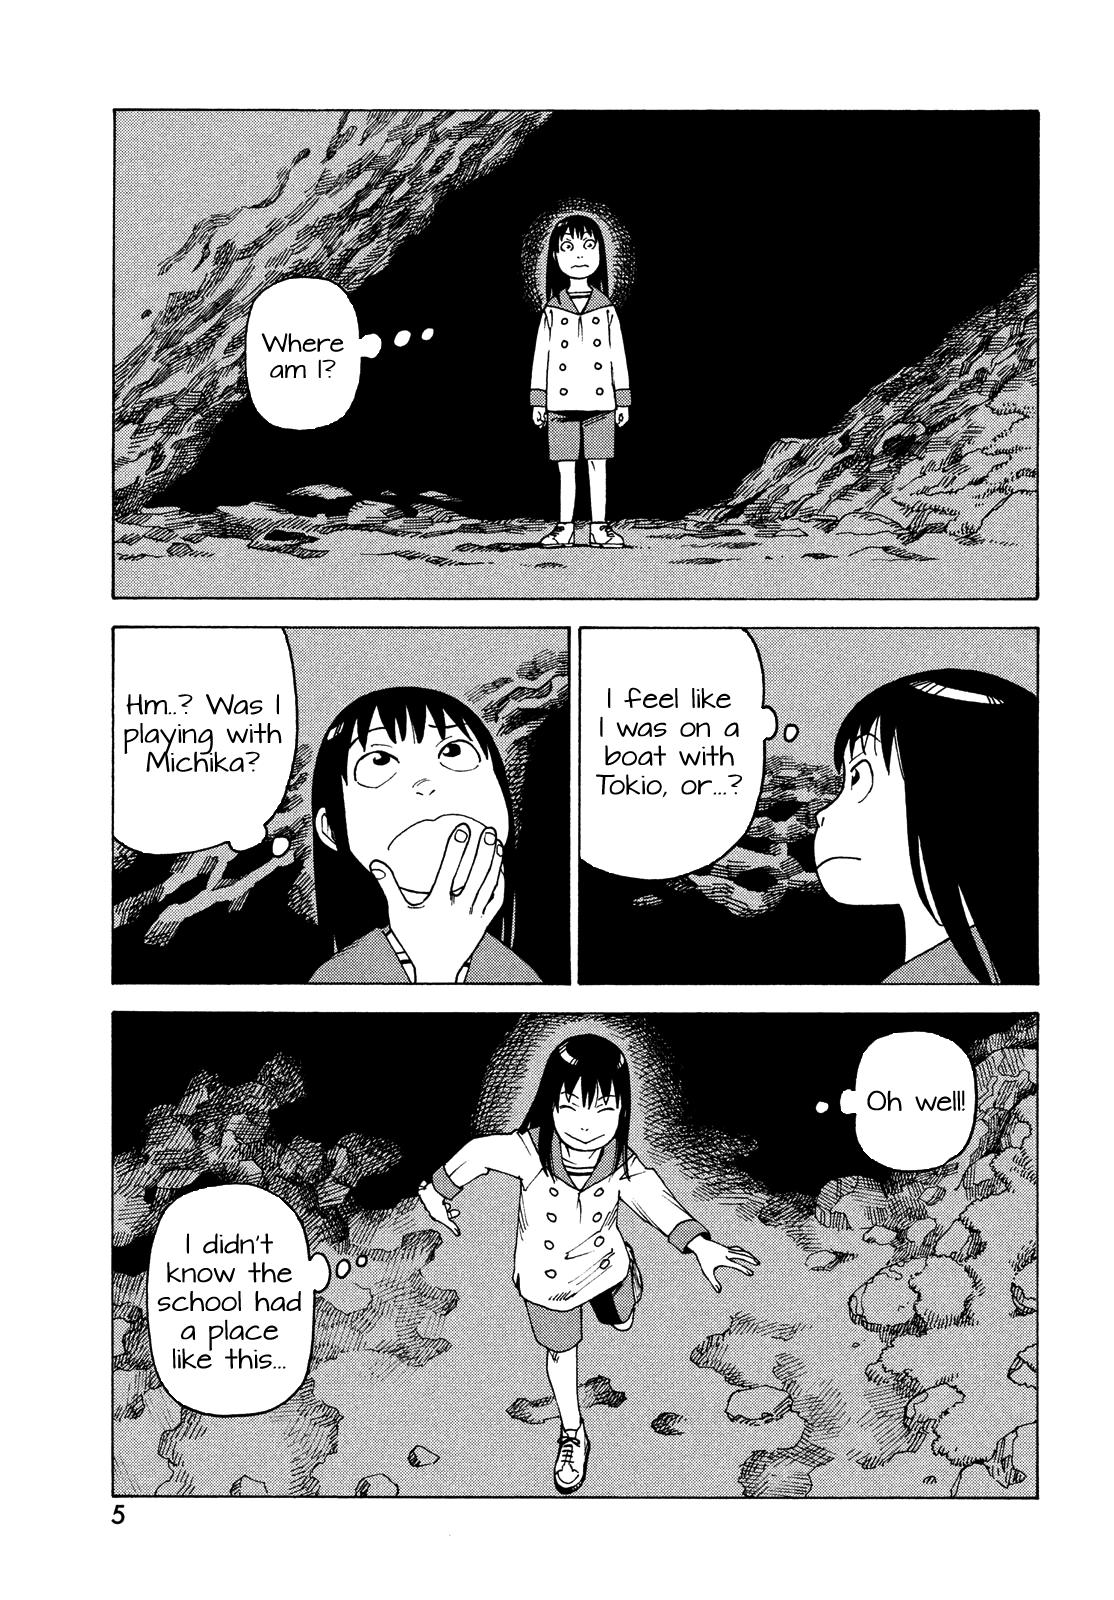 Tengoku Daimakyou Vol.8 Chapter 49: Michika ➀ page 4 - Mangakakalot